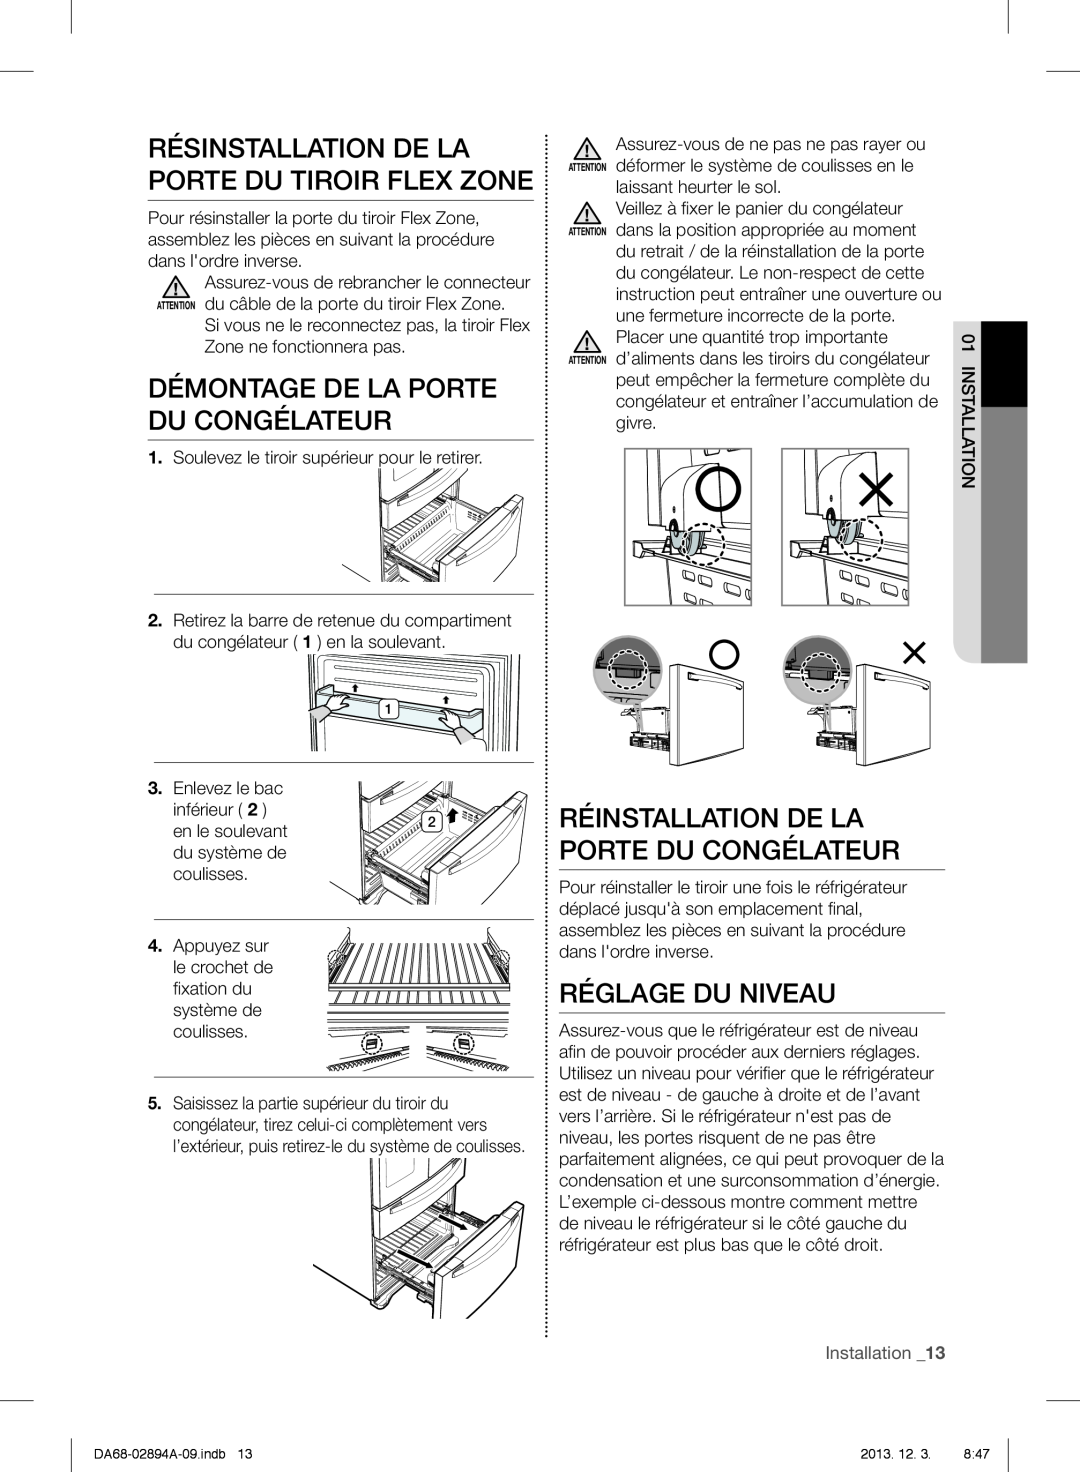 Samsung RF31FMEDBSR Résinstallation De La Porte Du Tiroir Flex Zone, Démontage De La Porte Du Congélateur, Installation 